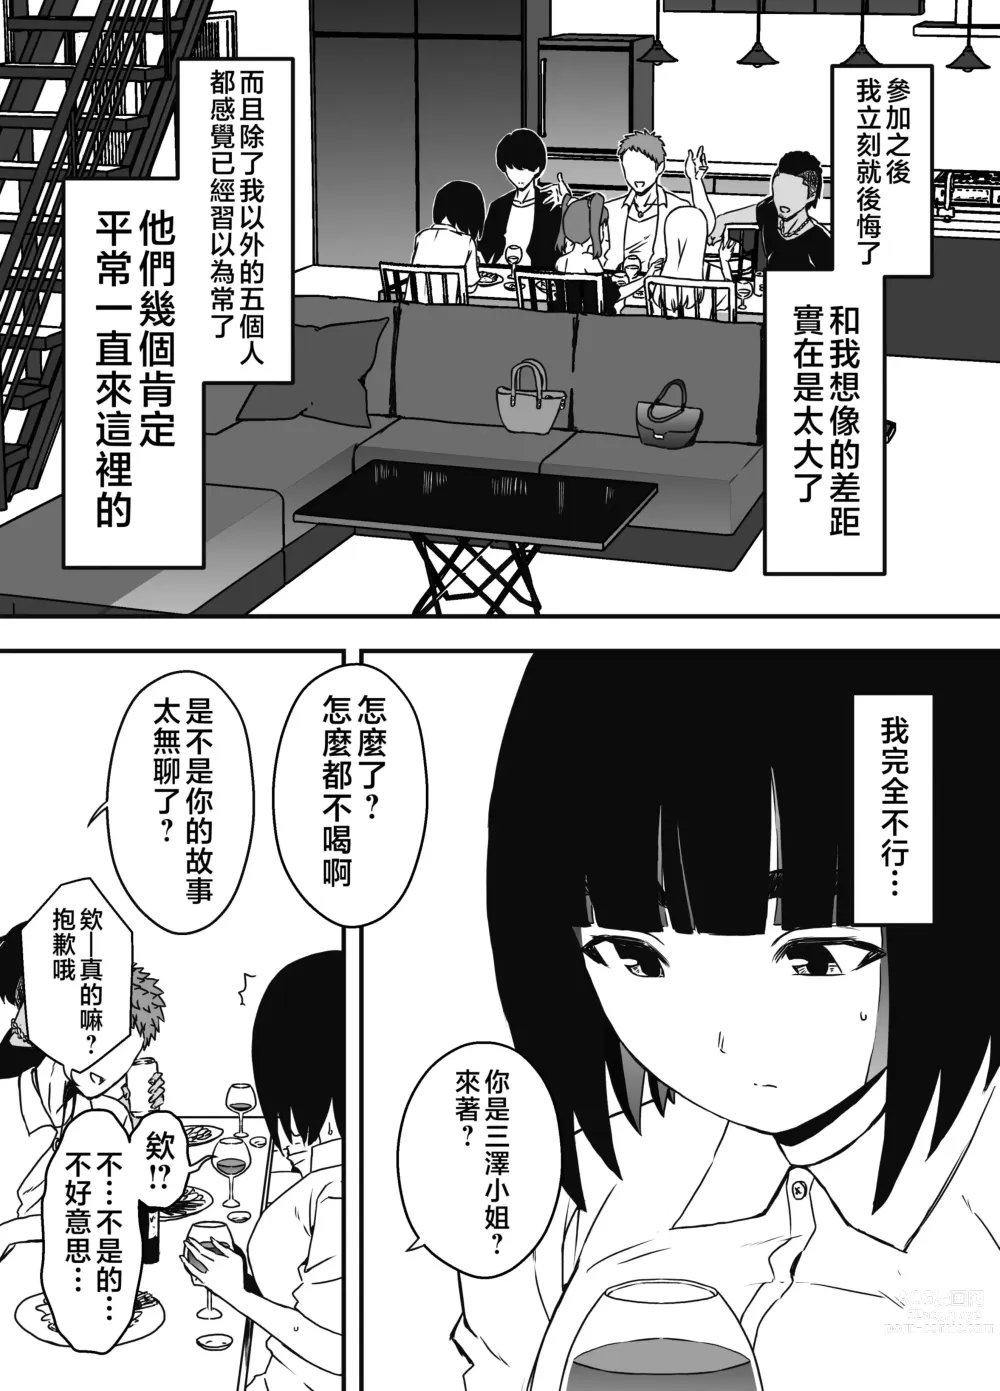 Page 11 of doujinshi Giri no Ane to no 7-kakan Seikatsu - 5